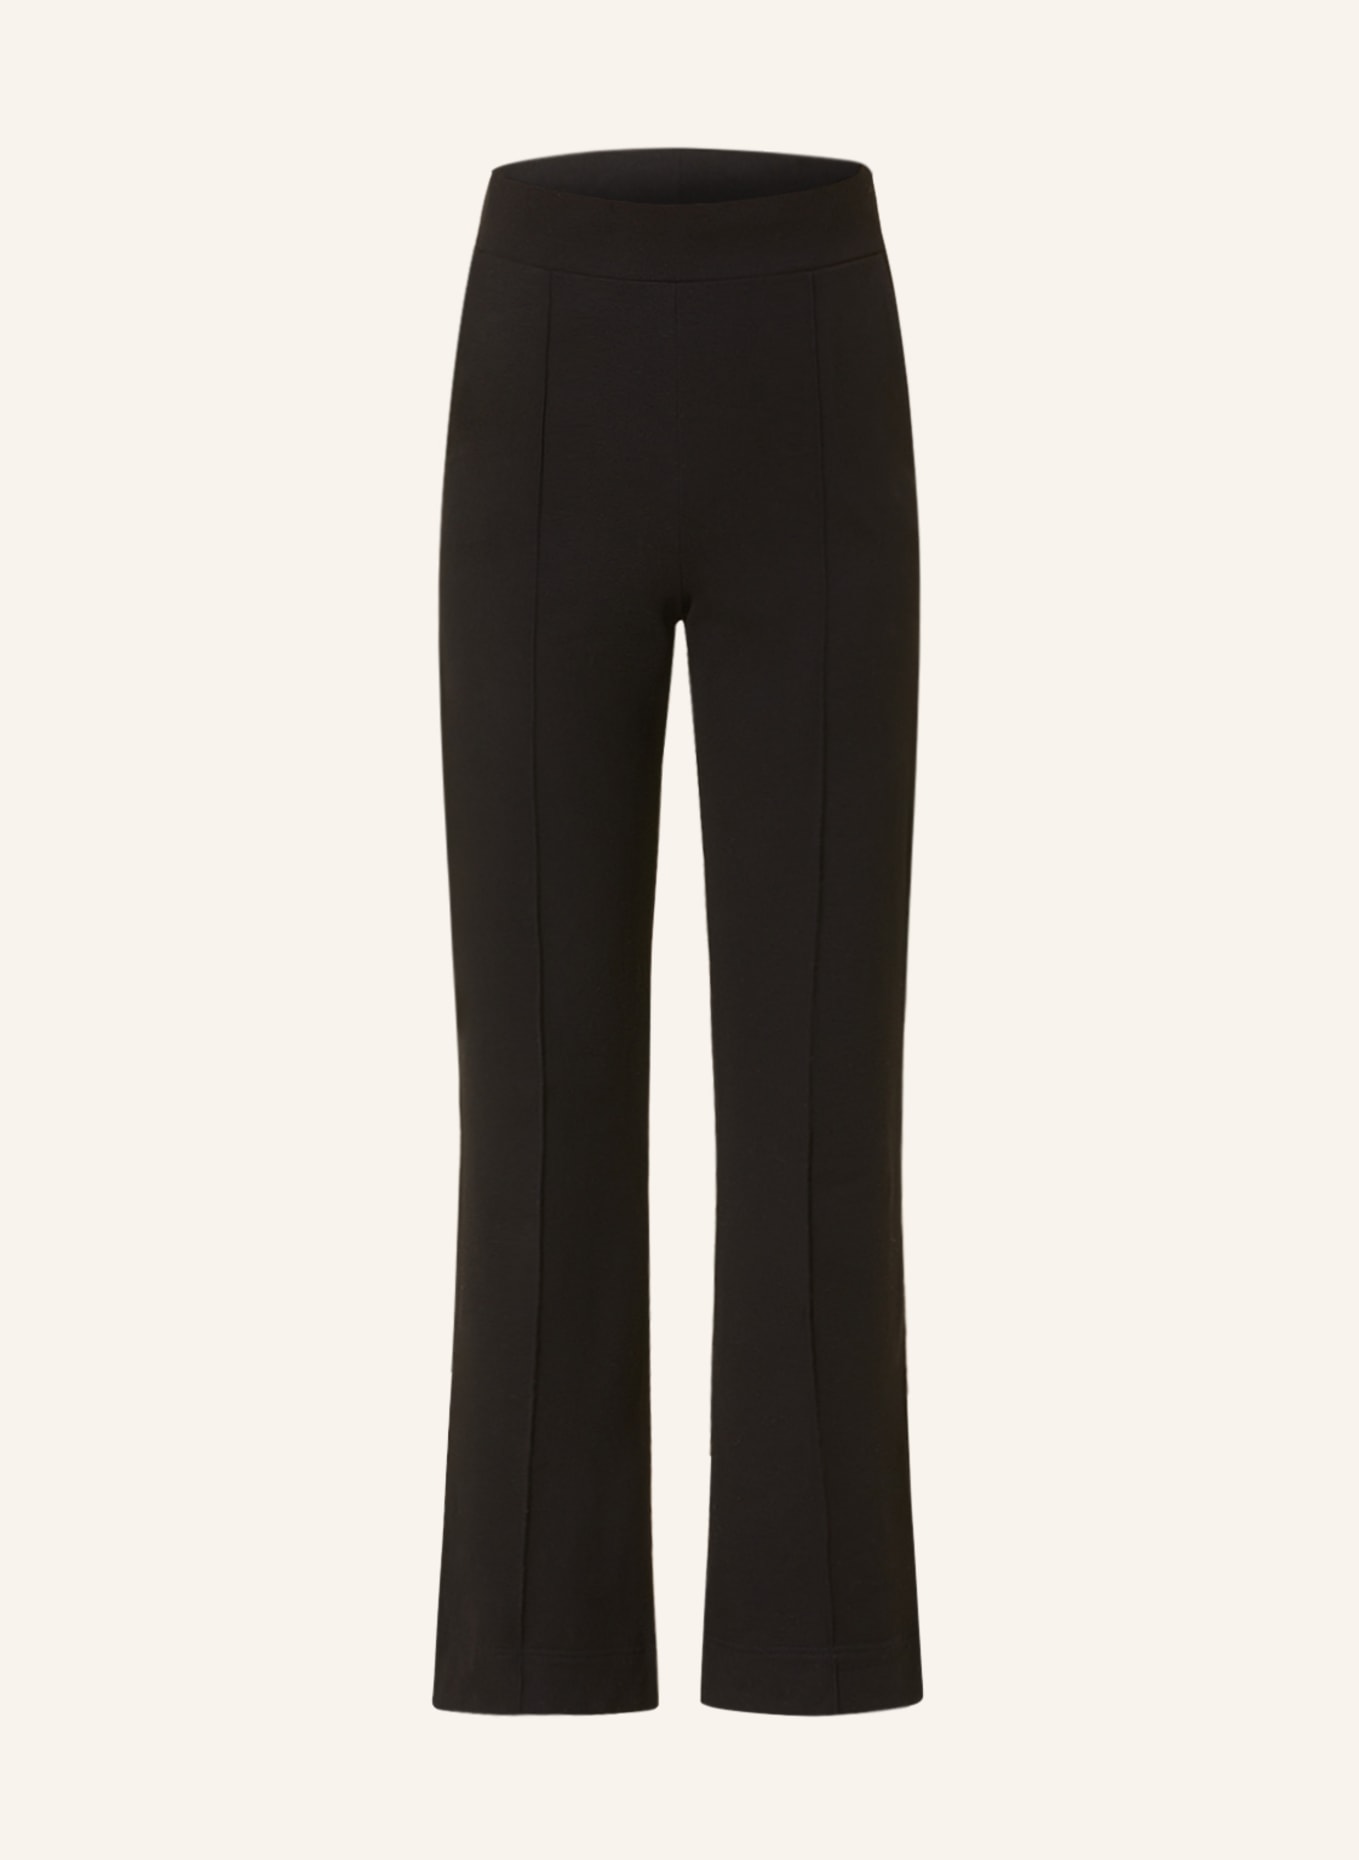 lilienfels Jersey pants, Color: BLACK (Image 1)